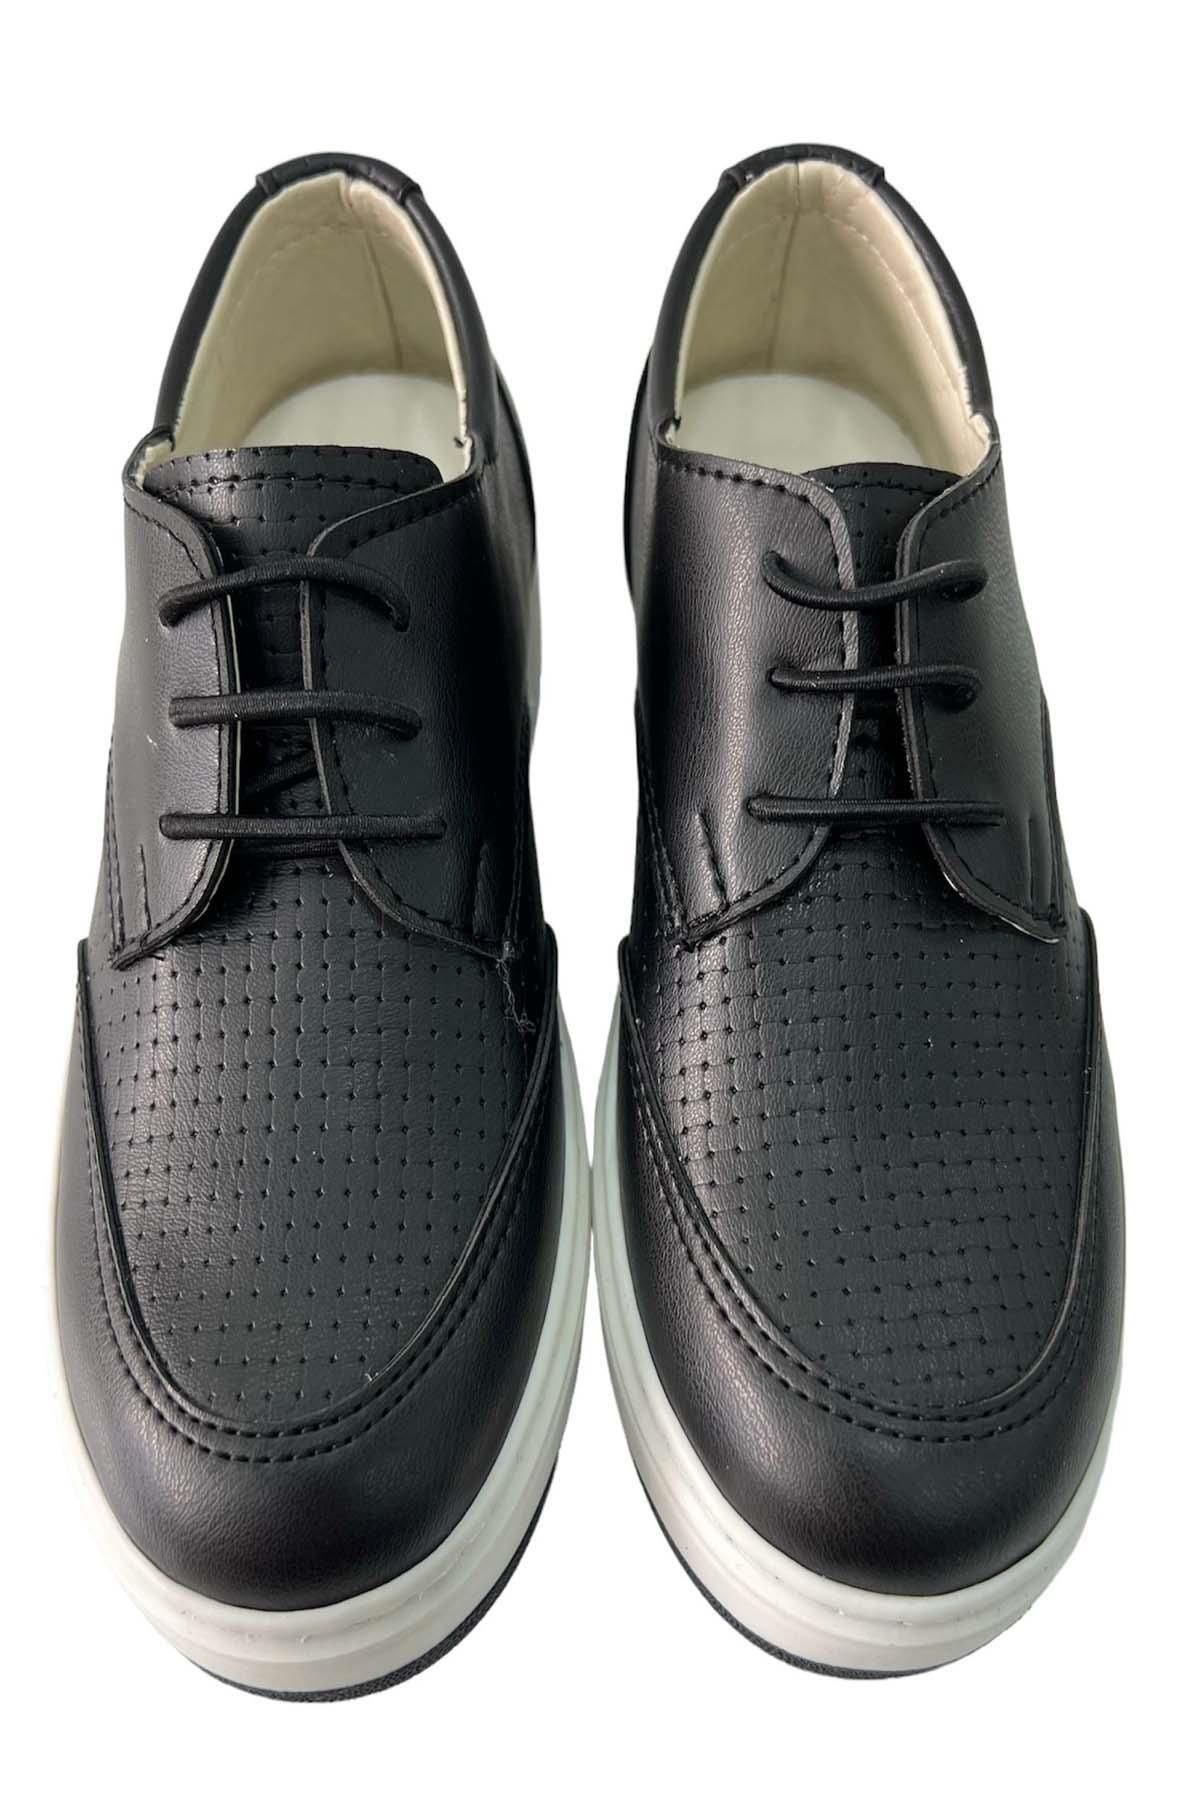 Riccotarz Erkek Çocuk Bağcıklı Siyah Klasik Ayakkabı 24-40 Numara